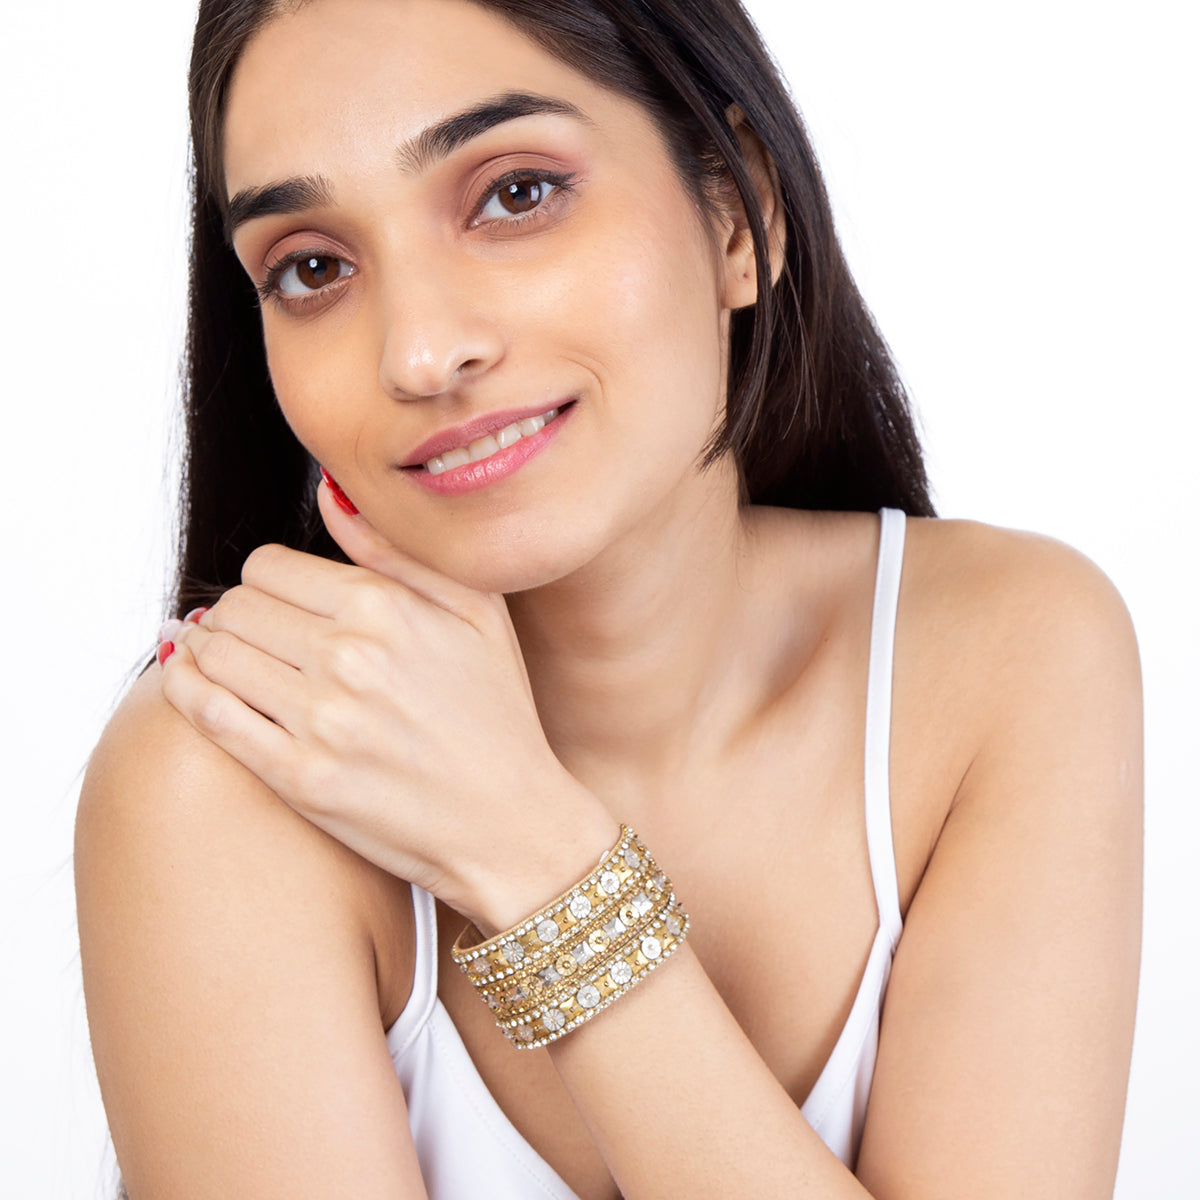 Gold bracelet with crystal details